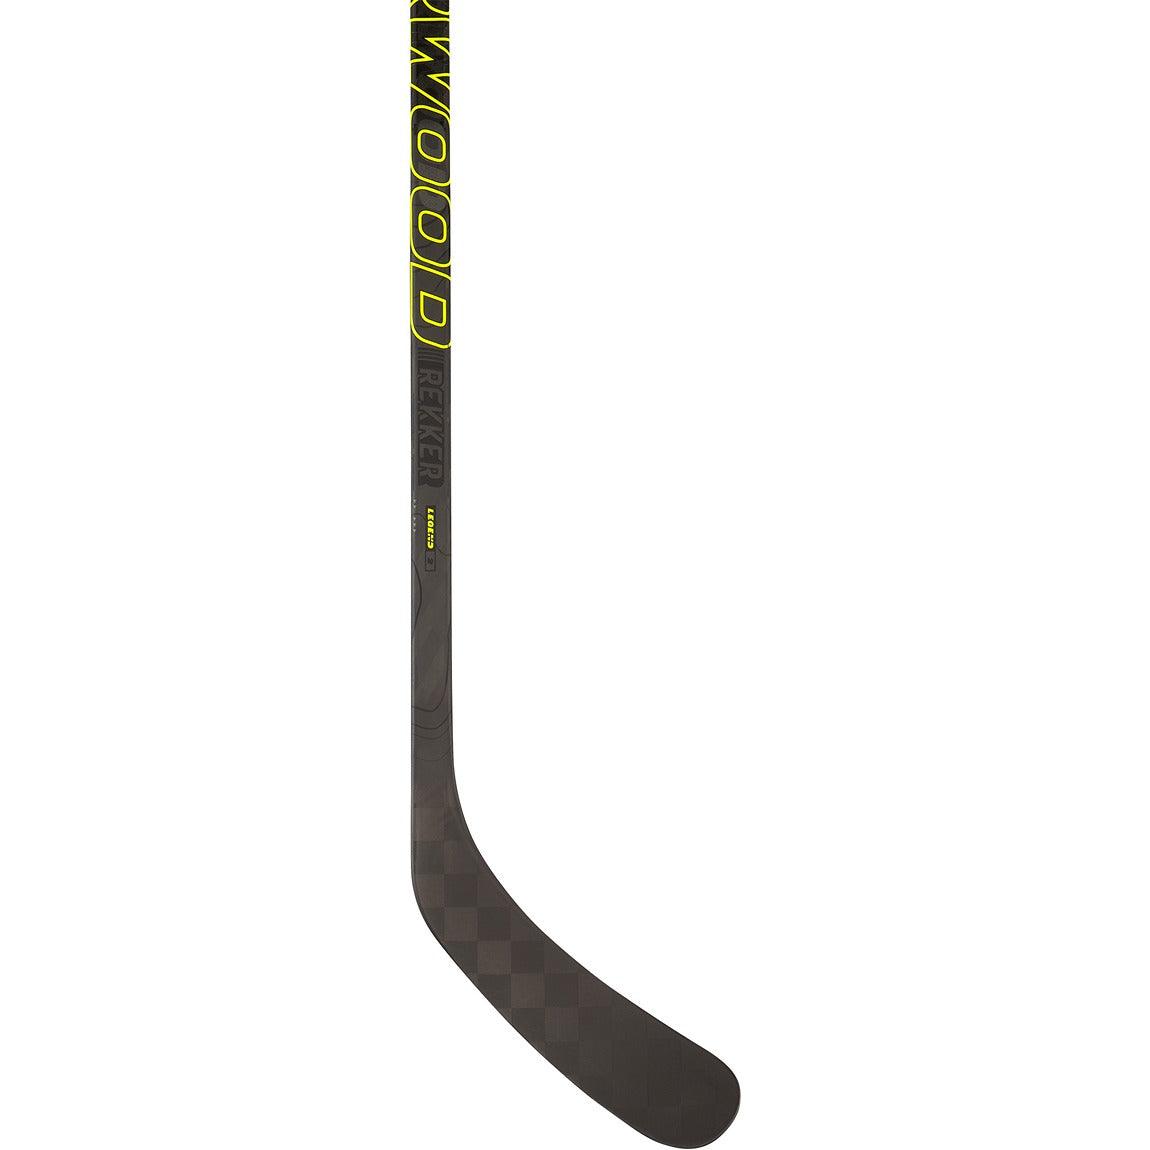 Sherwood Rekker Legend 2 Hockey Stick 